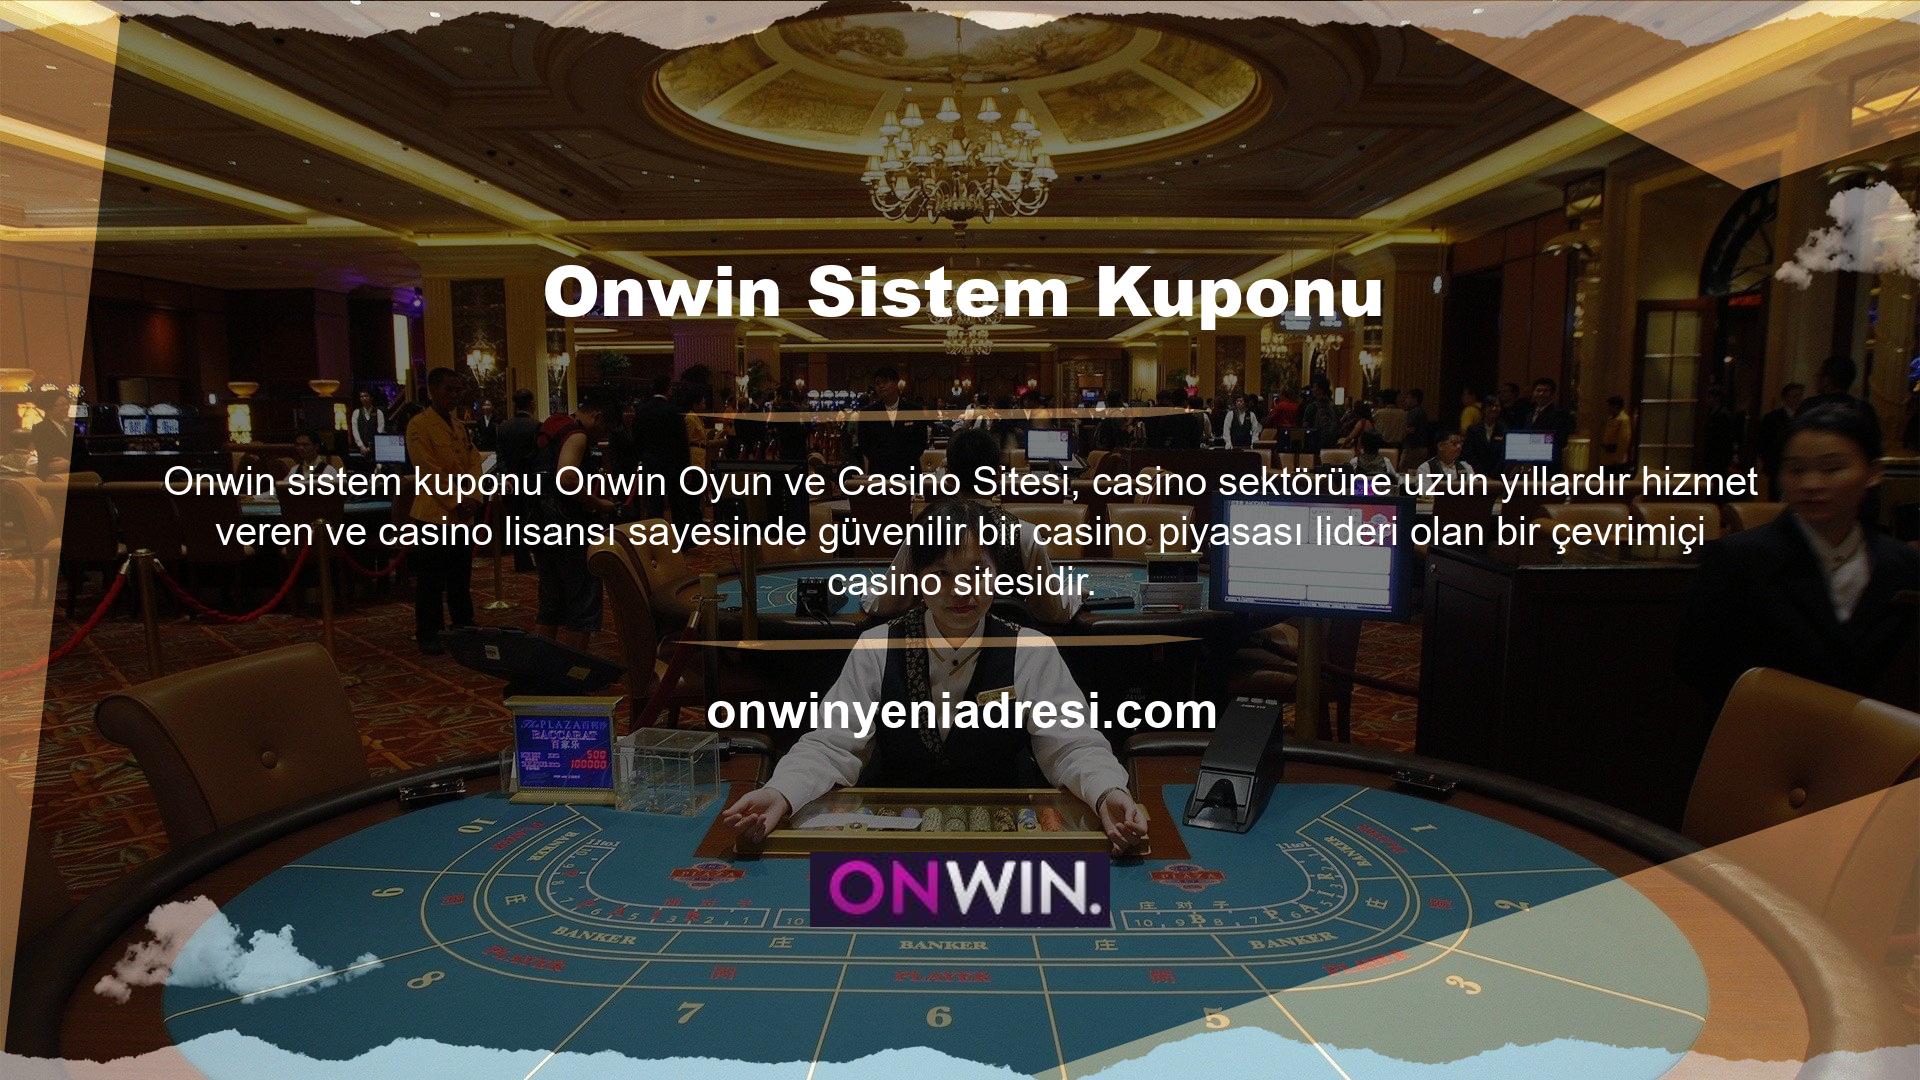 Onwin web sitesi, müşterilerine çok çeşitli bahisler sunmaktadır